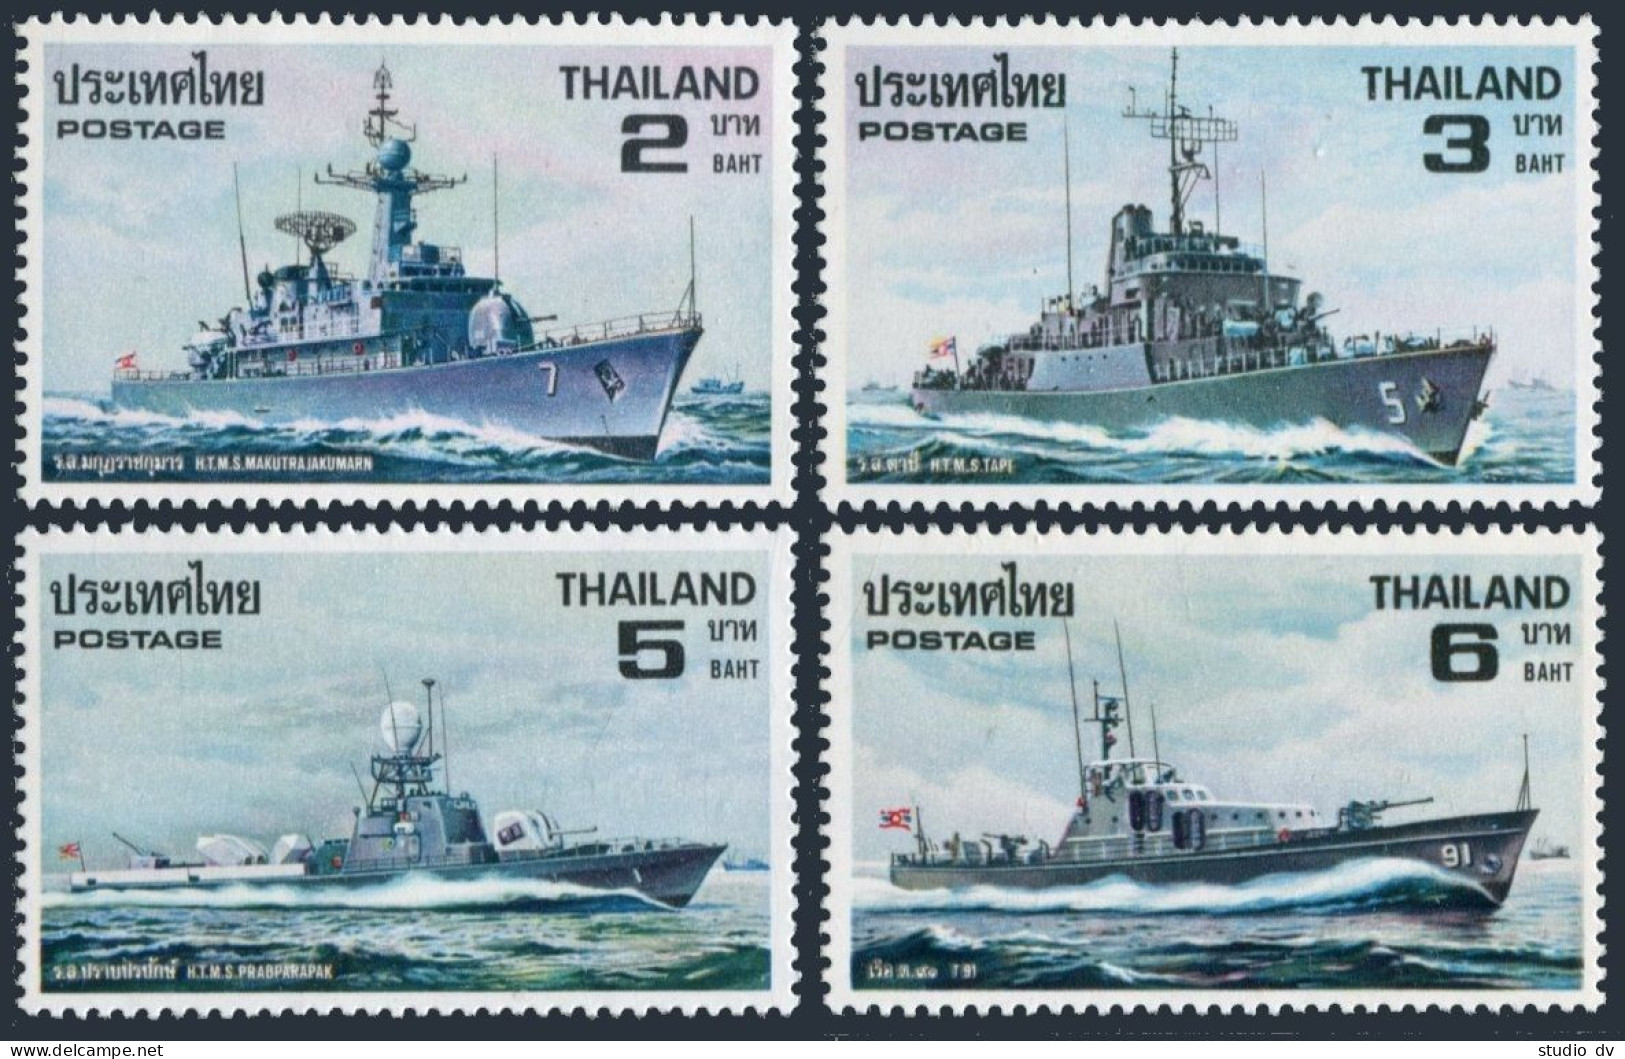 Thailand 895-898,MNH.Michel 918-921. Thai Naval Ships 1979. - Thailand